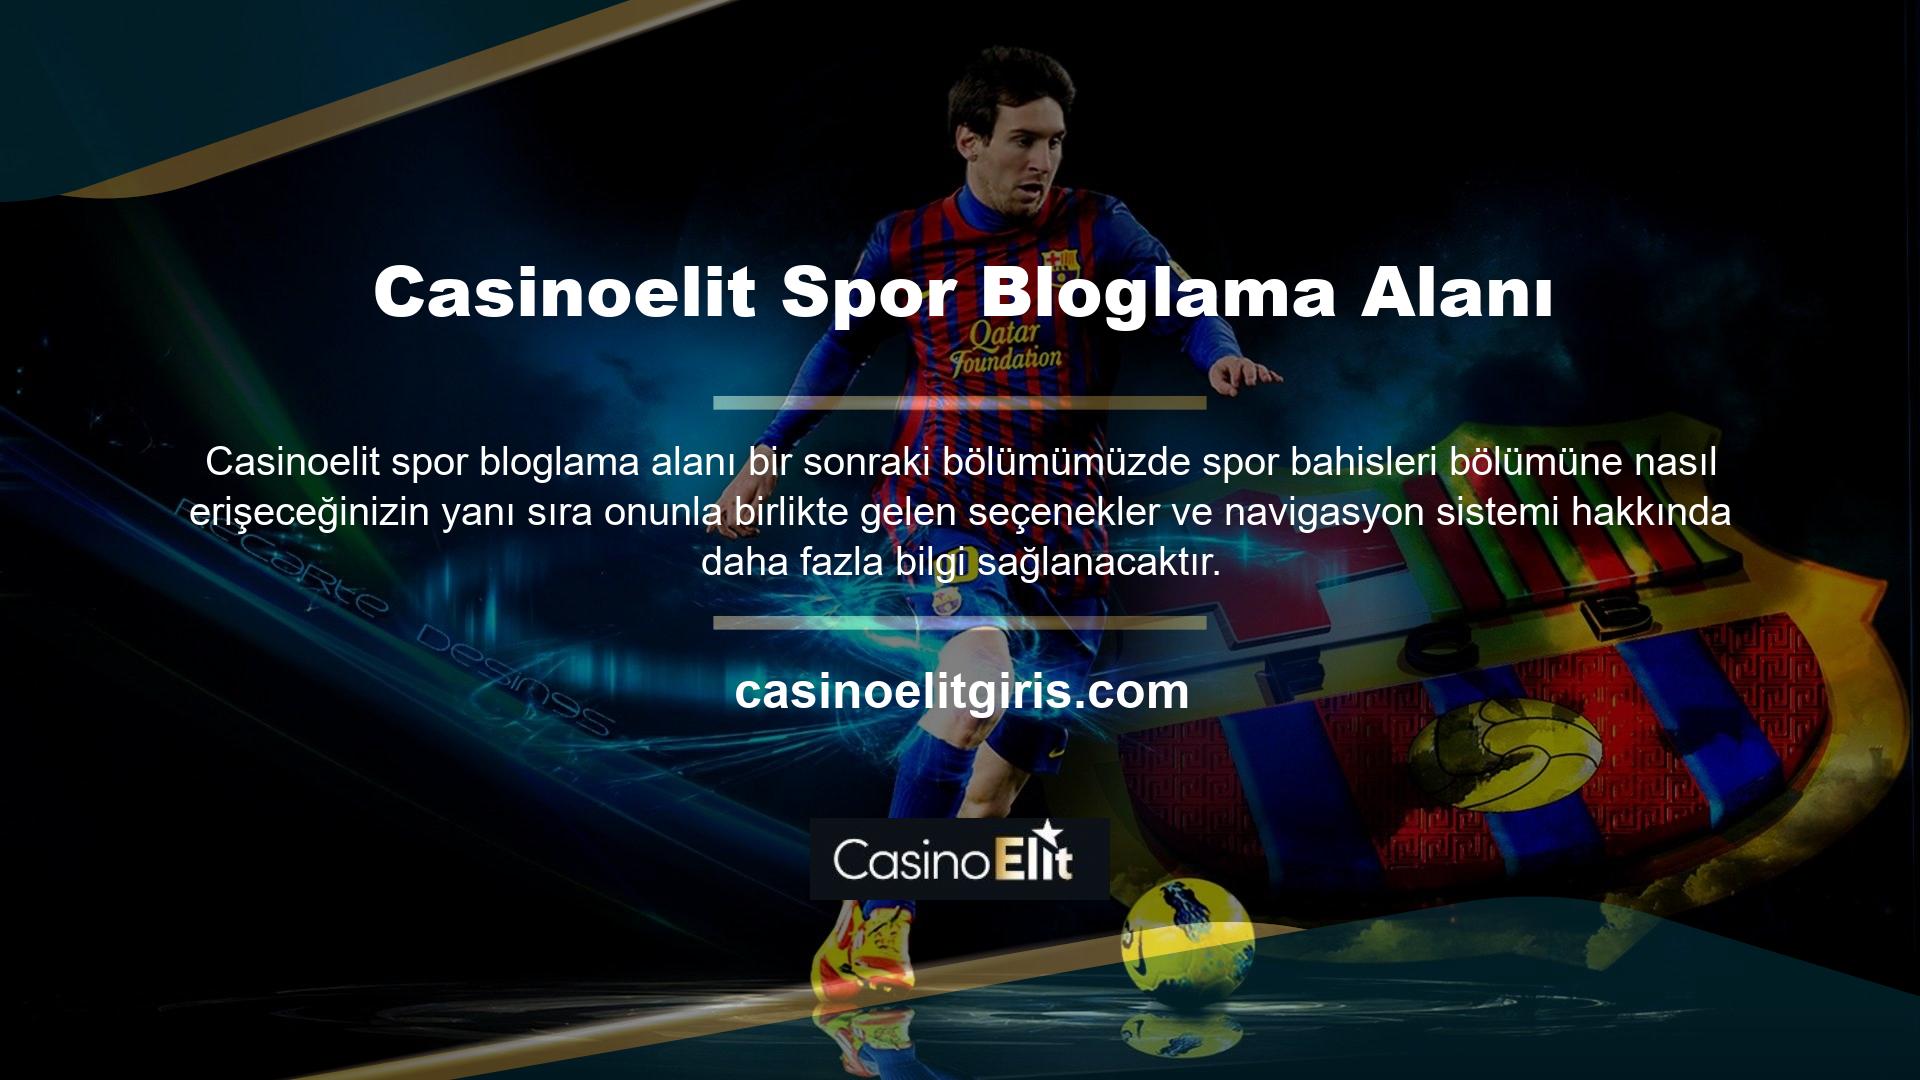 Öncelikle resmi Casinoelit web sitesini açın ve ardından ana menüden ‘Spor Bahisleri’ butonuna tıklayın